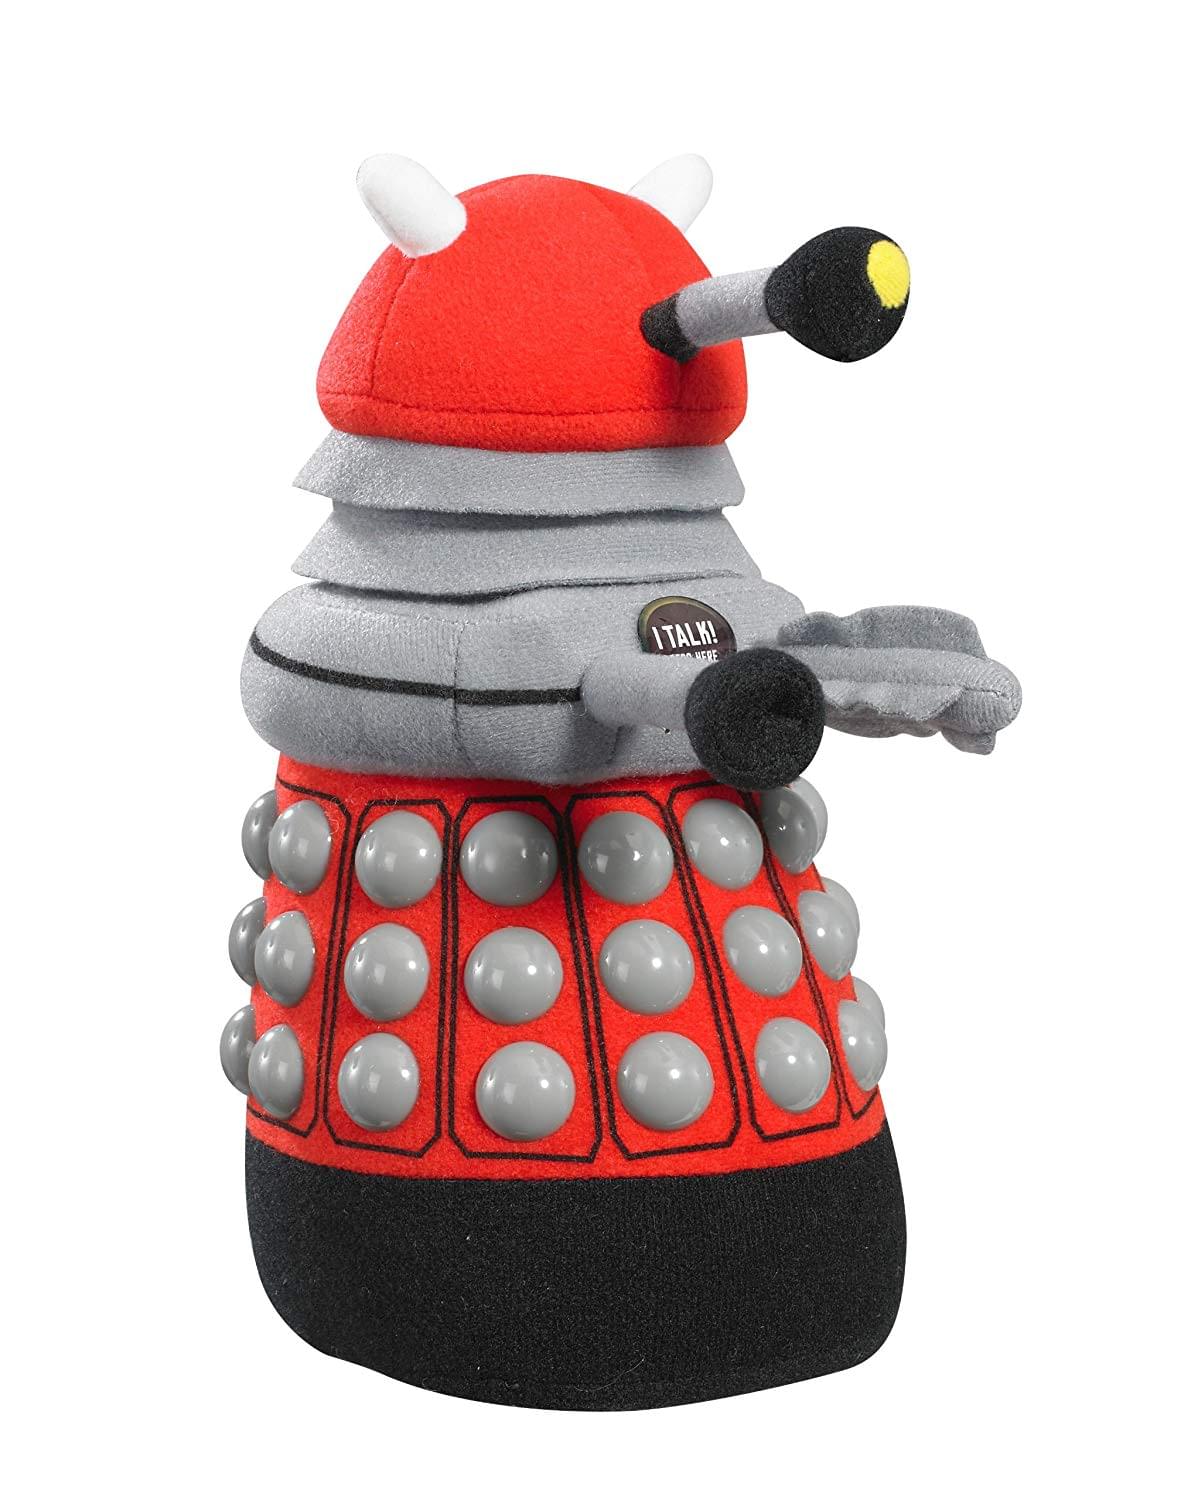 Doctor Who Medium Talking Plush: Red Dalek